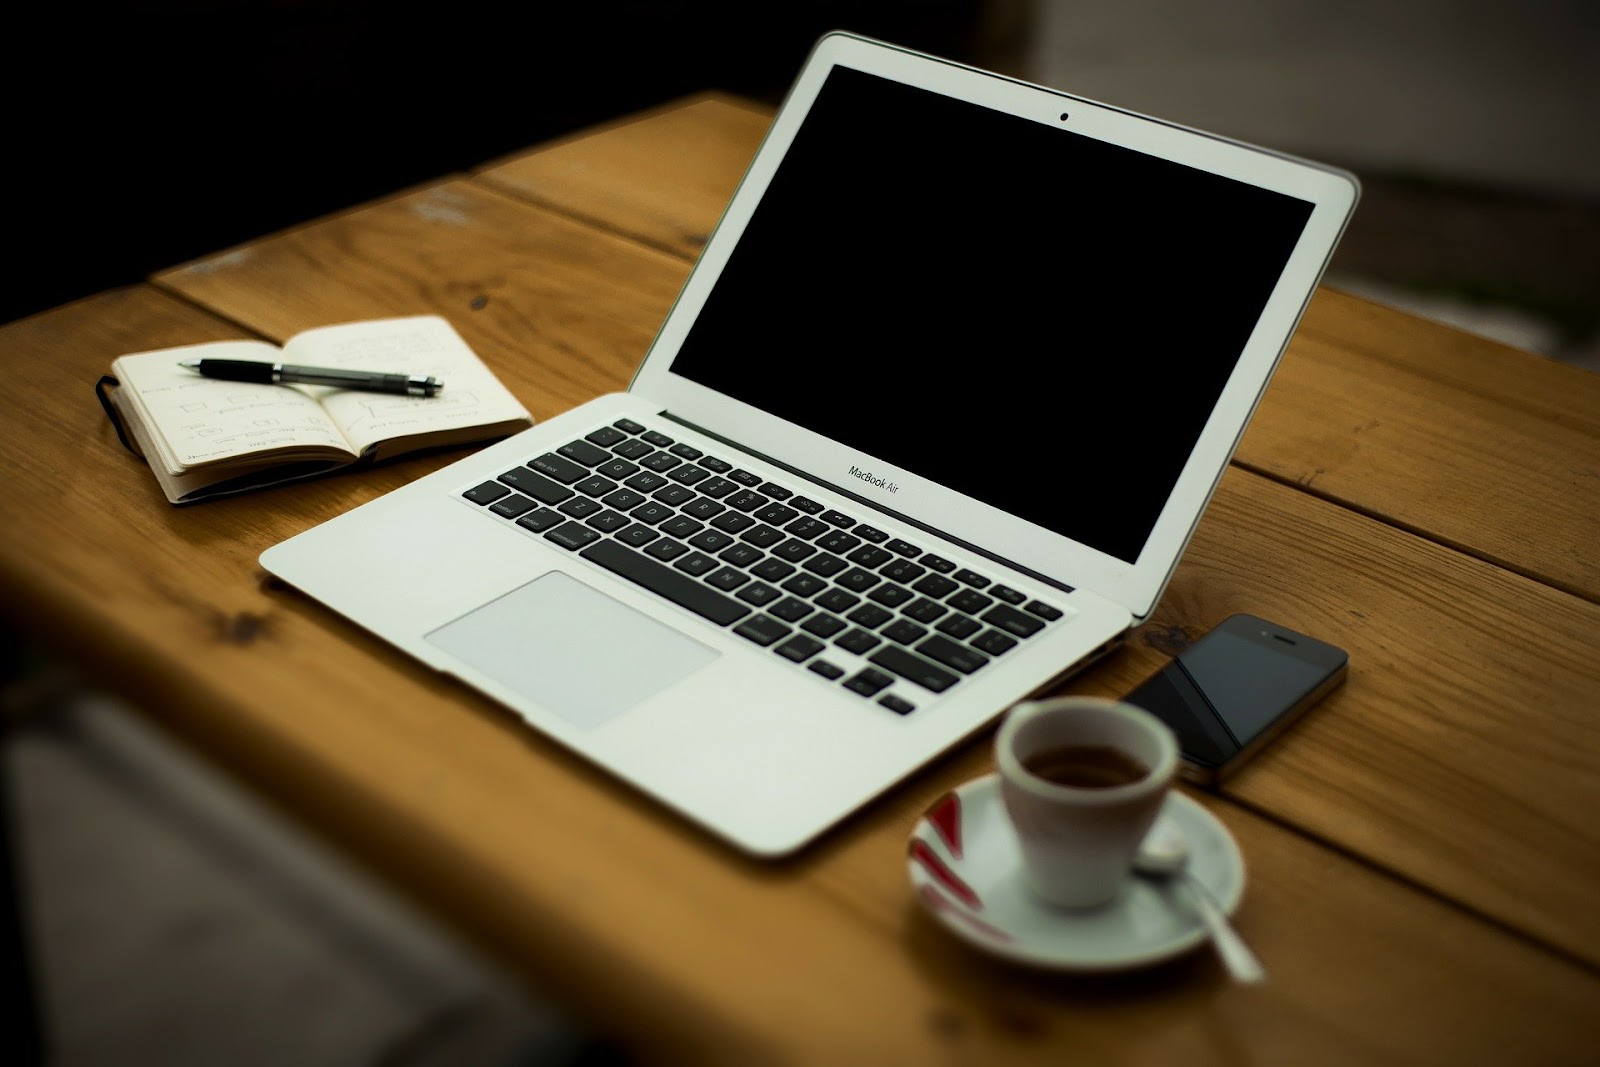 Um caderno com uma caneta em cima, uma xícara com café, um celular e um computador em cima de uma mesa de madeira.